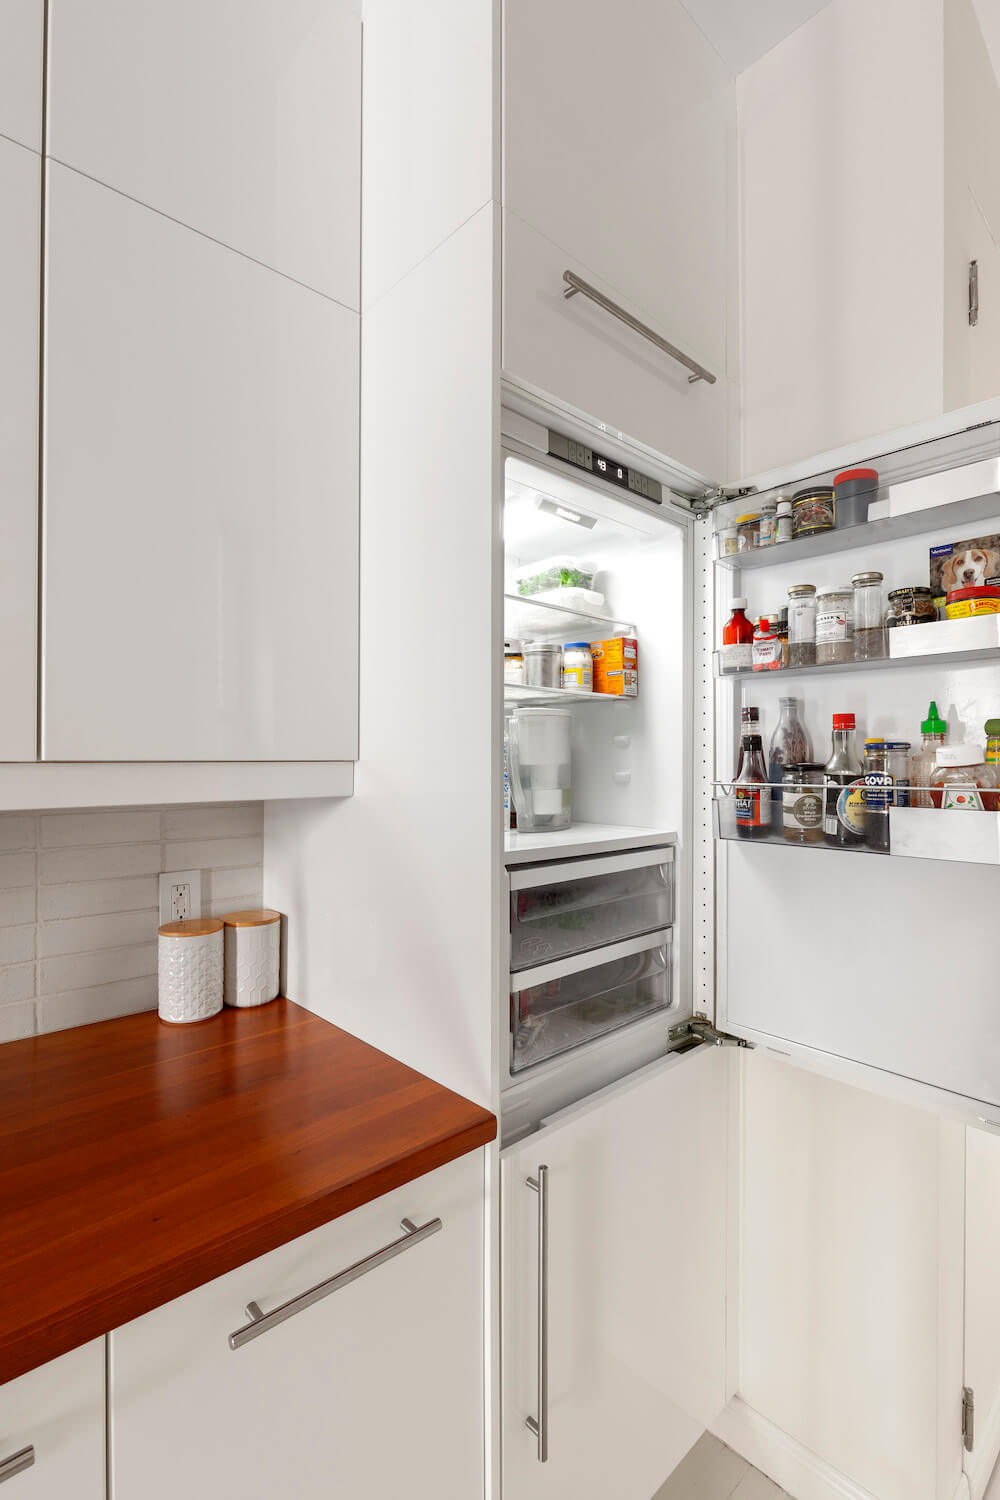 paneled refrigerator